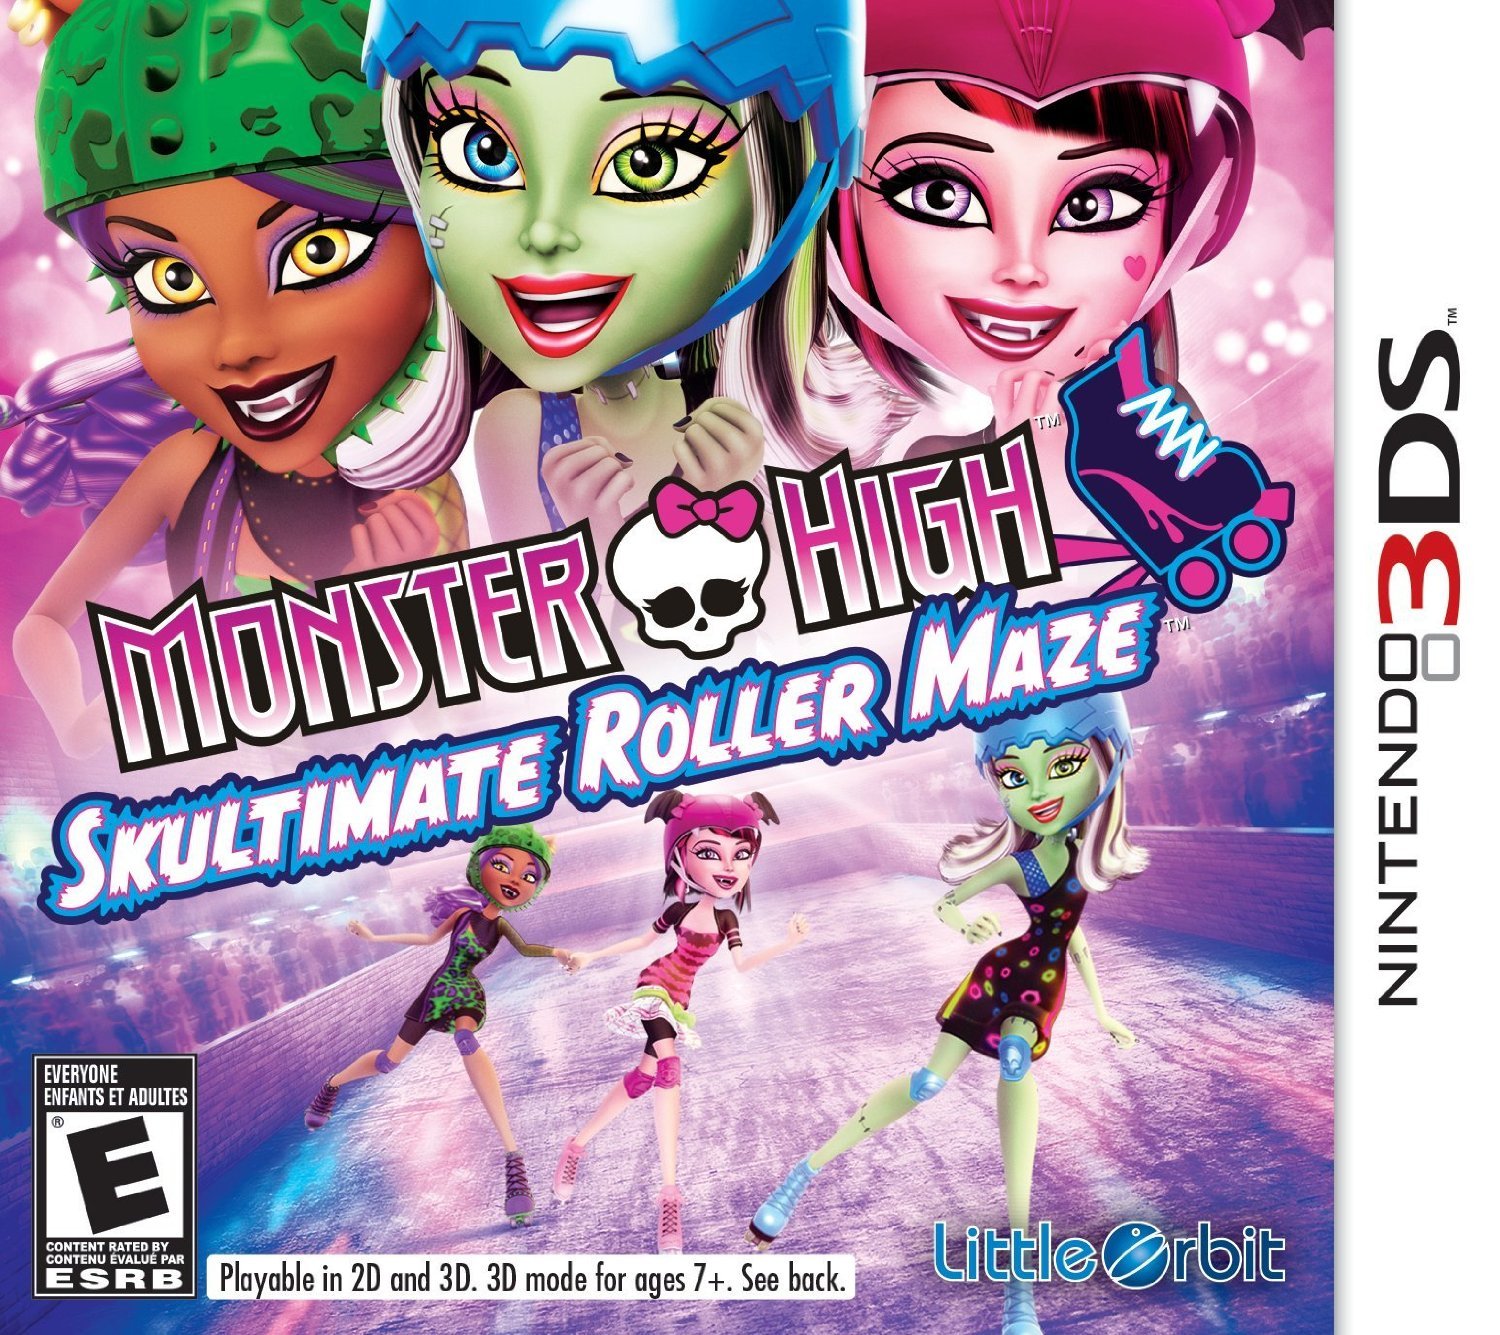 Image of Monster High: Skultimate Roller Maze